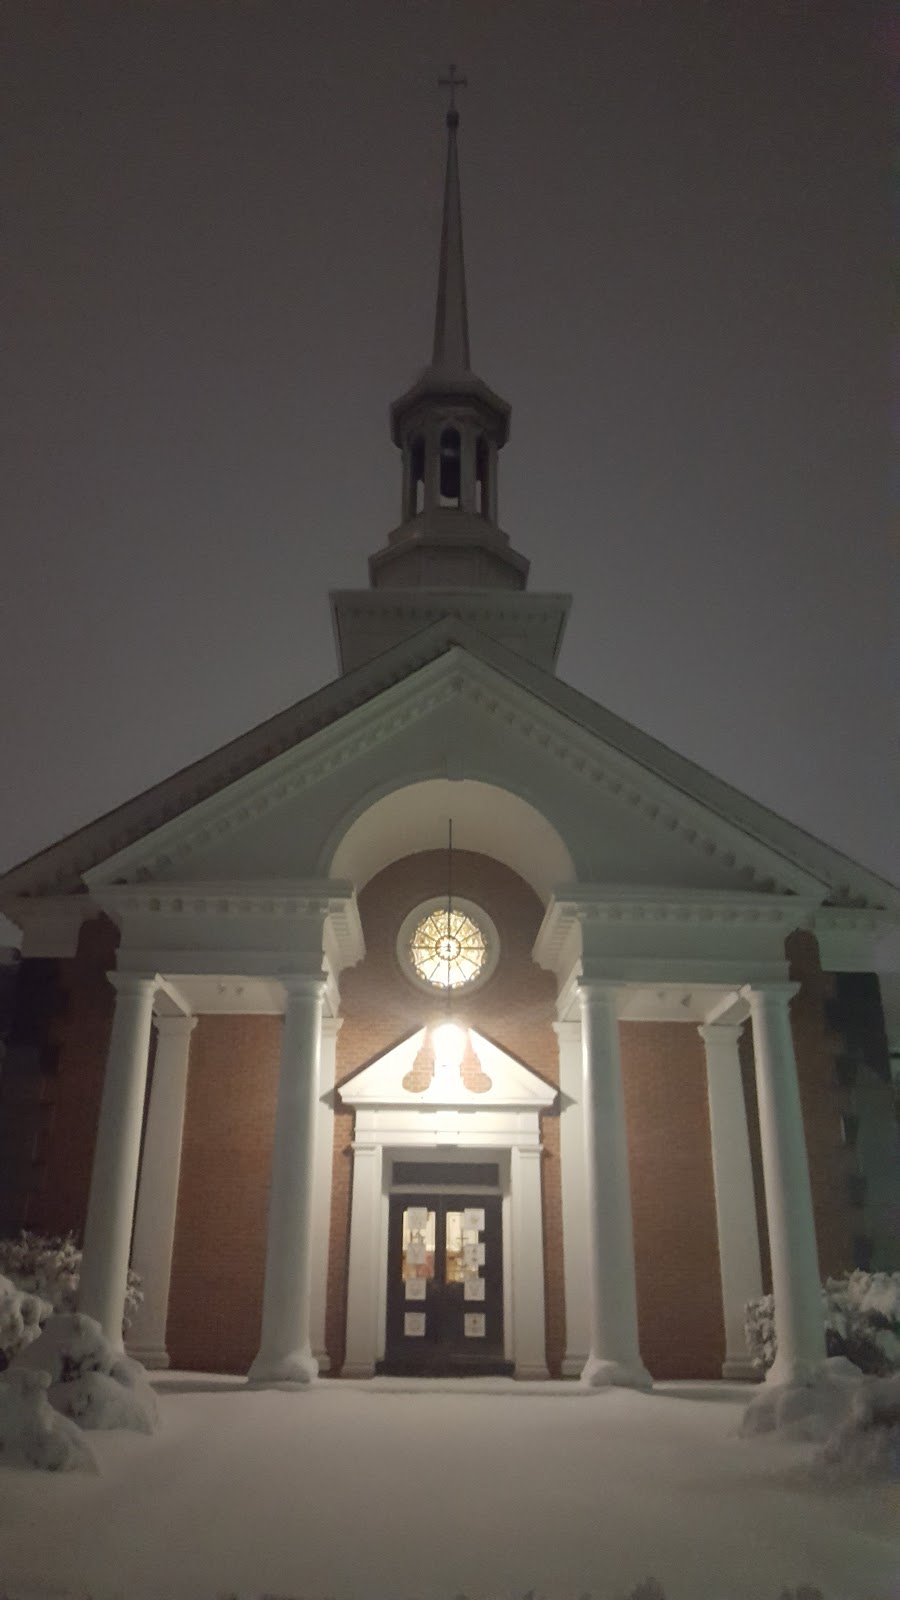 St Matthew Lutheran Church | 400 Lynbrooke Rd, Springfield, PA 19064 | Phone: (610) 543-8700